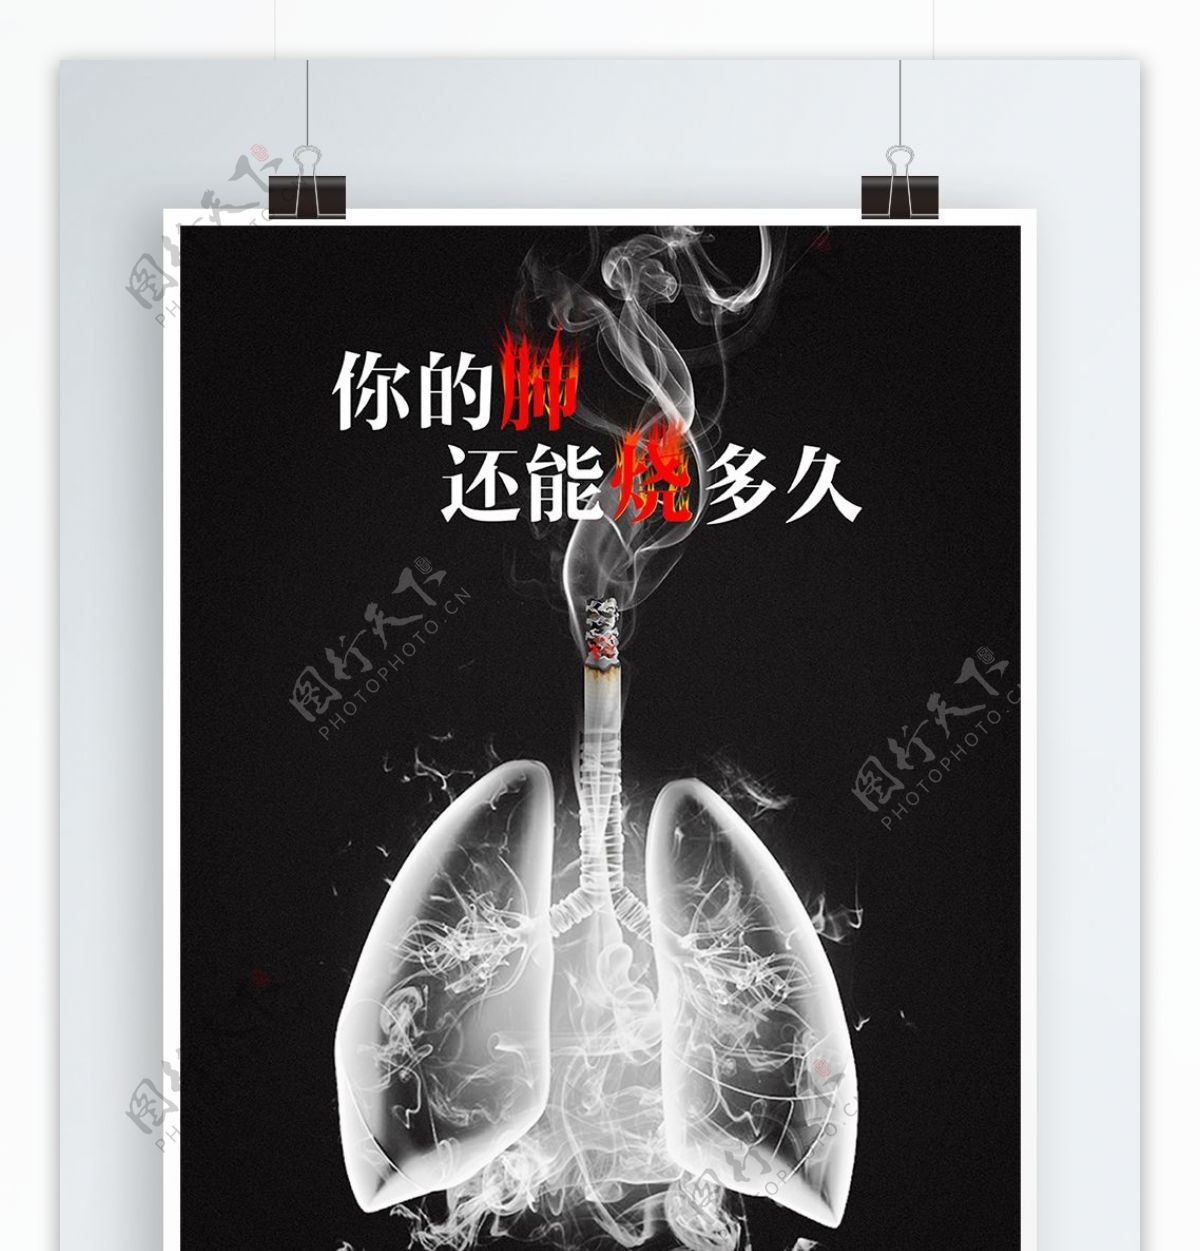 黑色吸烟有害健康公益海报